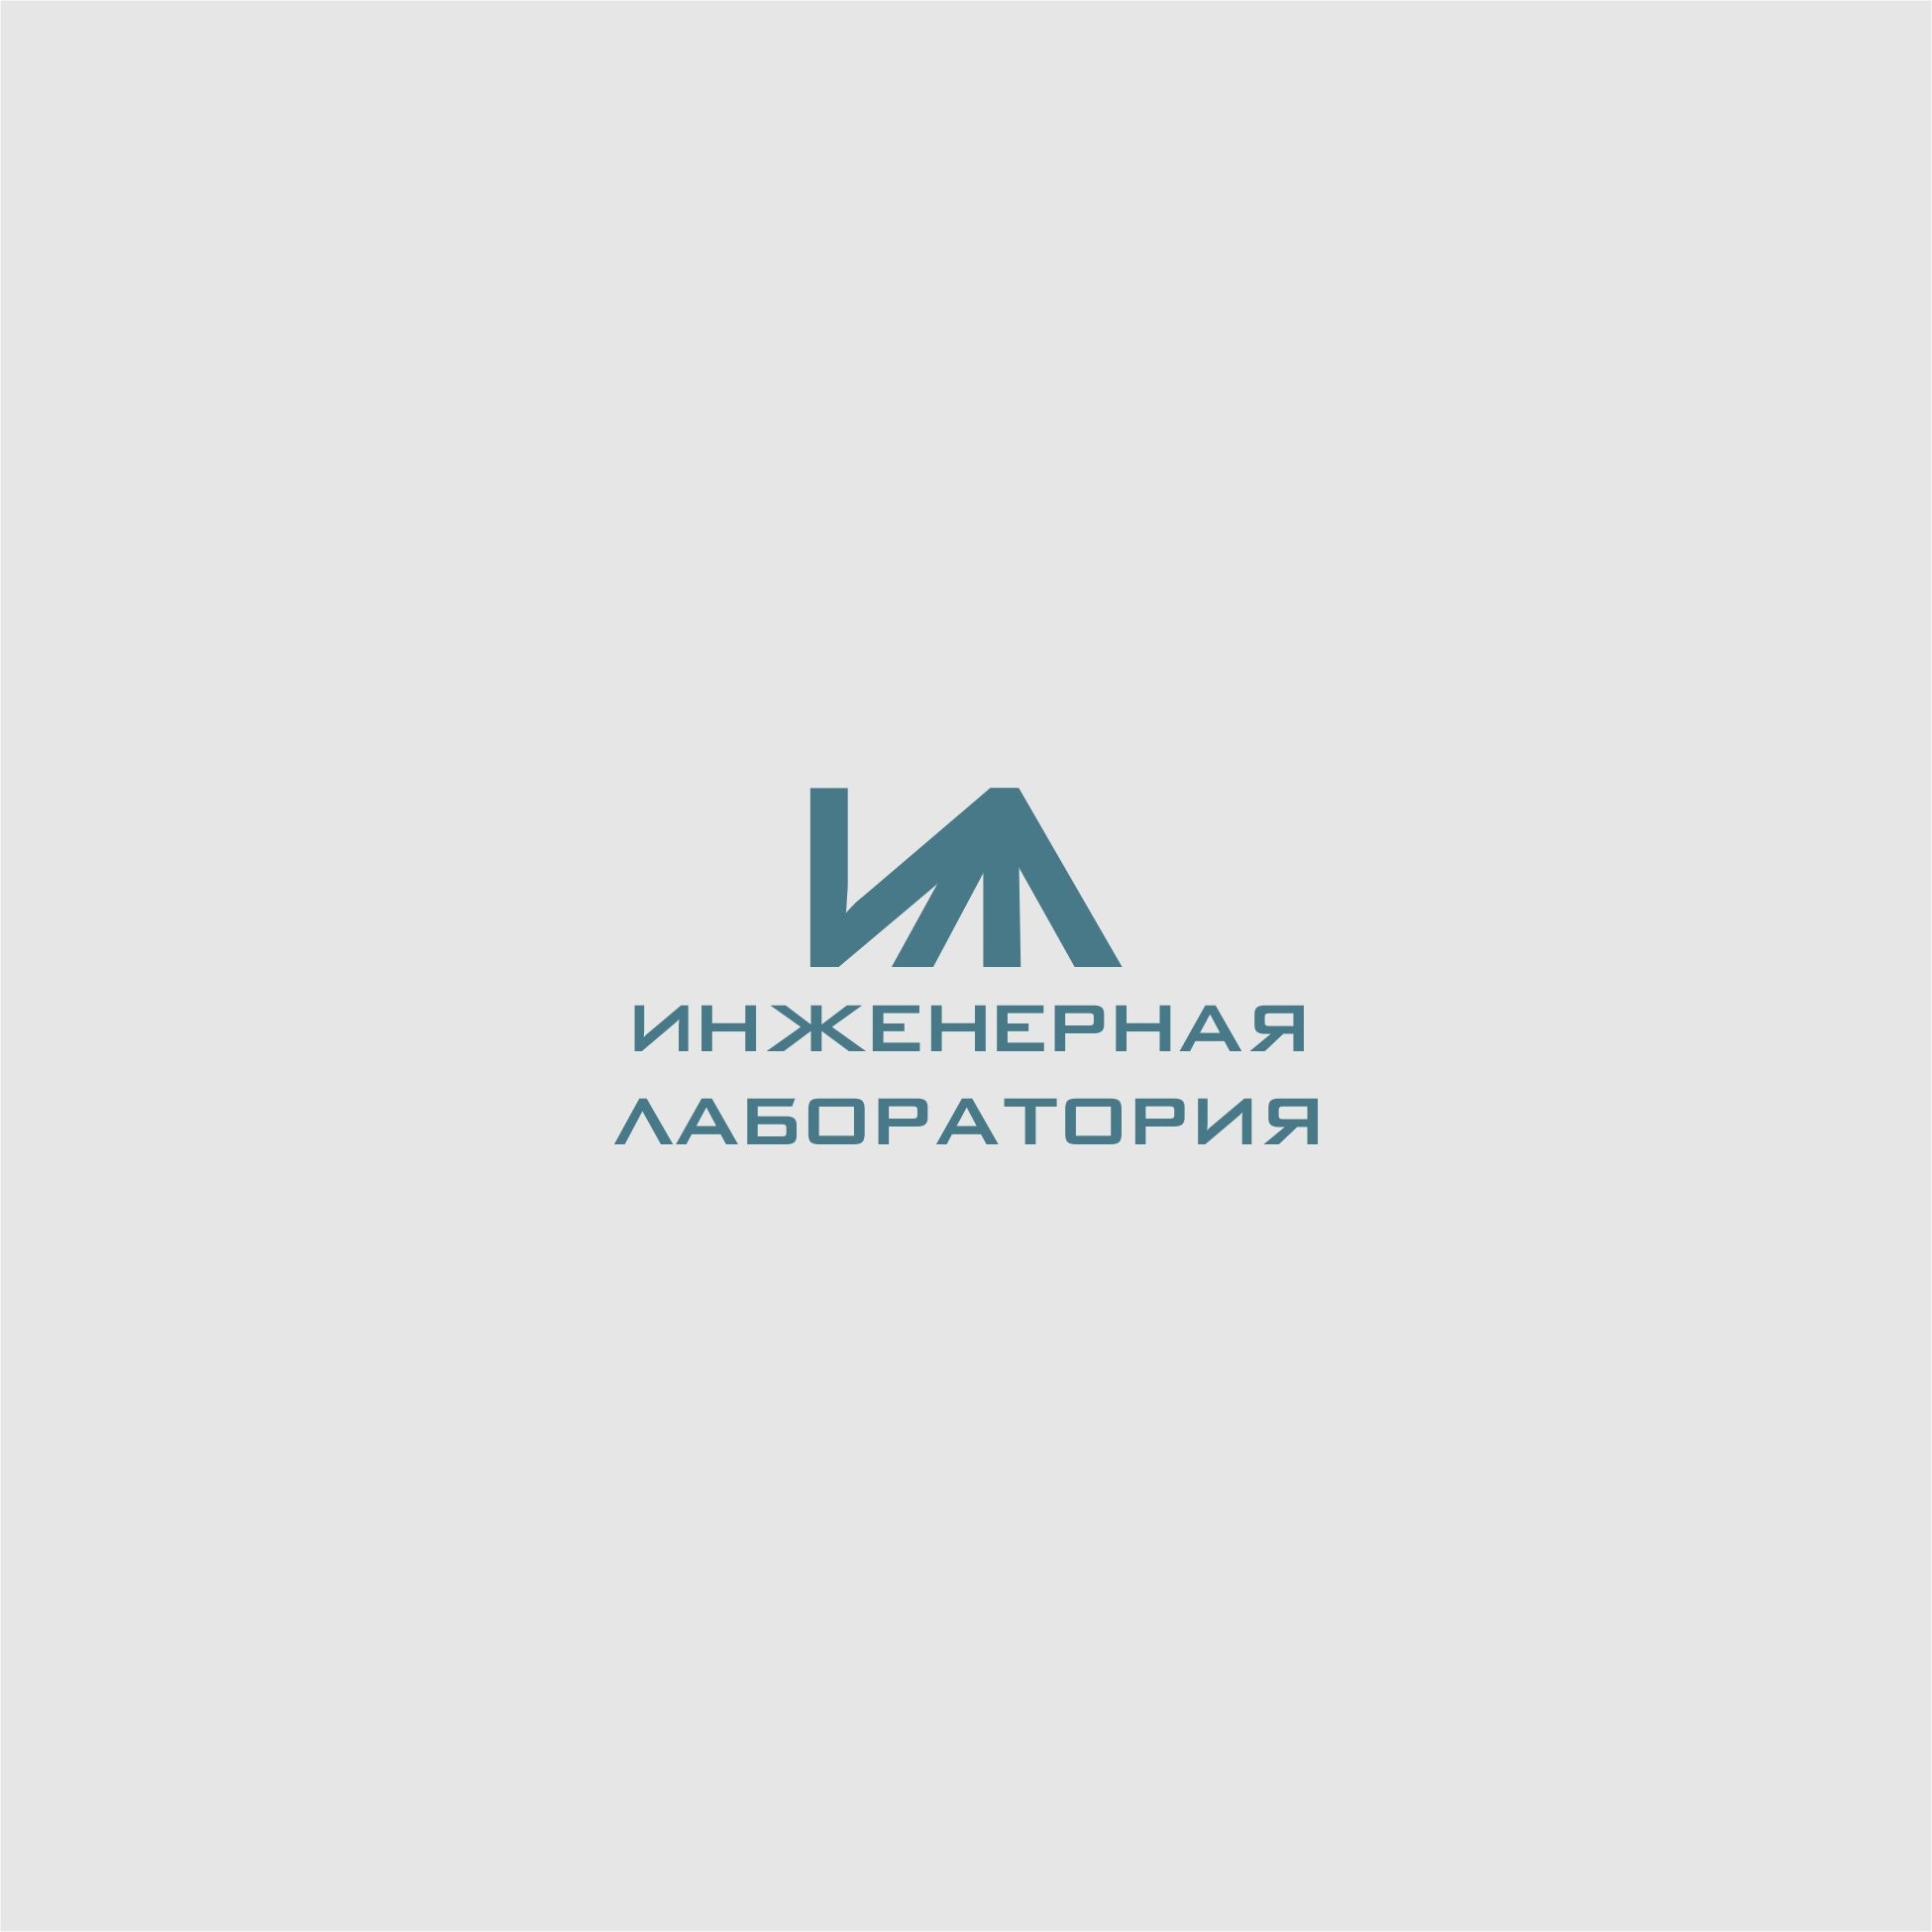 Лого и фирменный стиль для Инженерная лаборатория  - дизайнер trojni